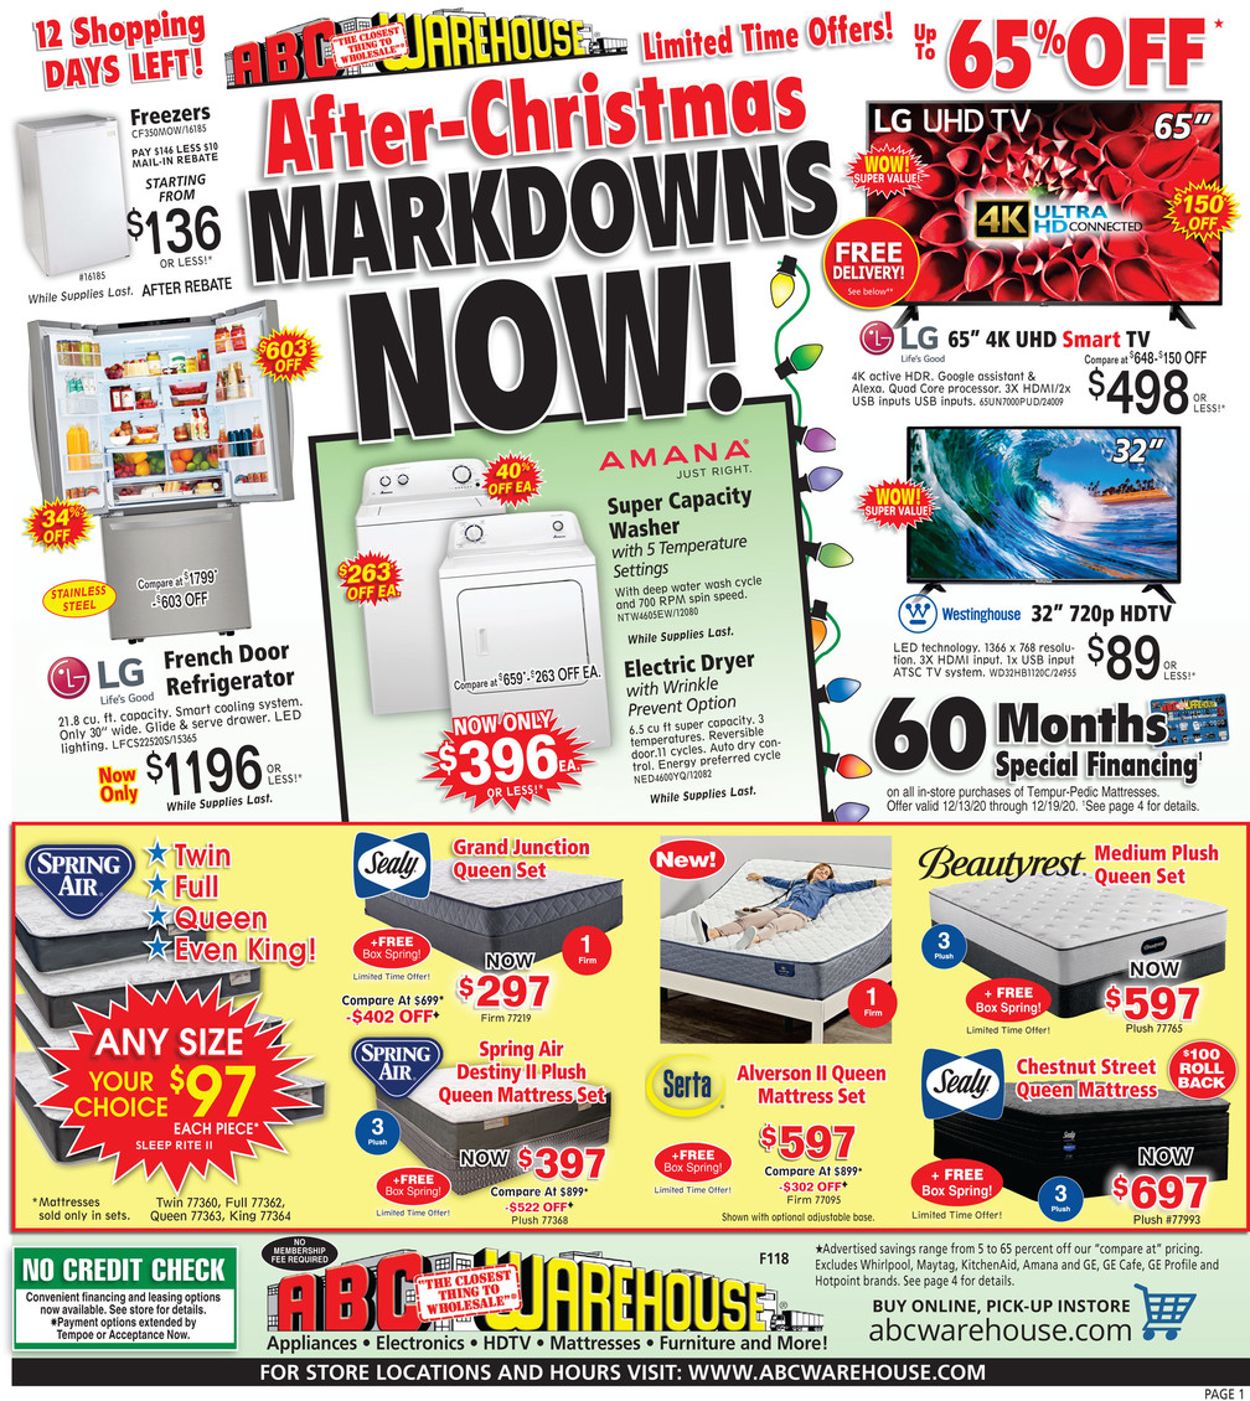 ABC Warehouse After-Christmas Markdowns 2020 Weekly Ad Circular - valid 12/13-12/19/2020